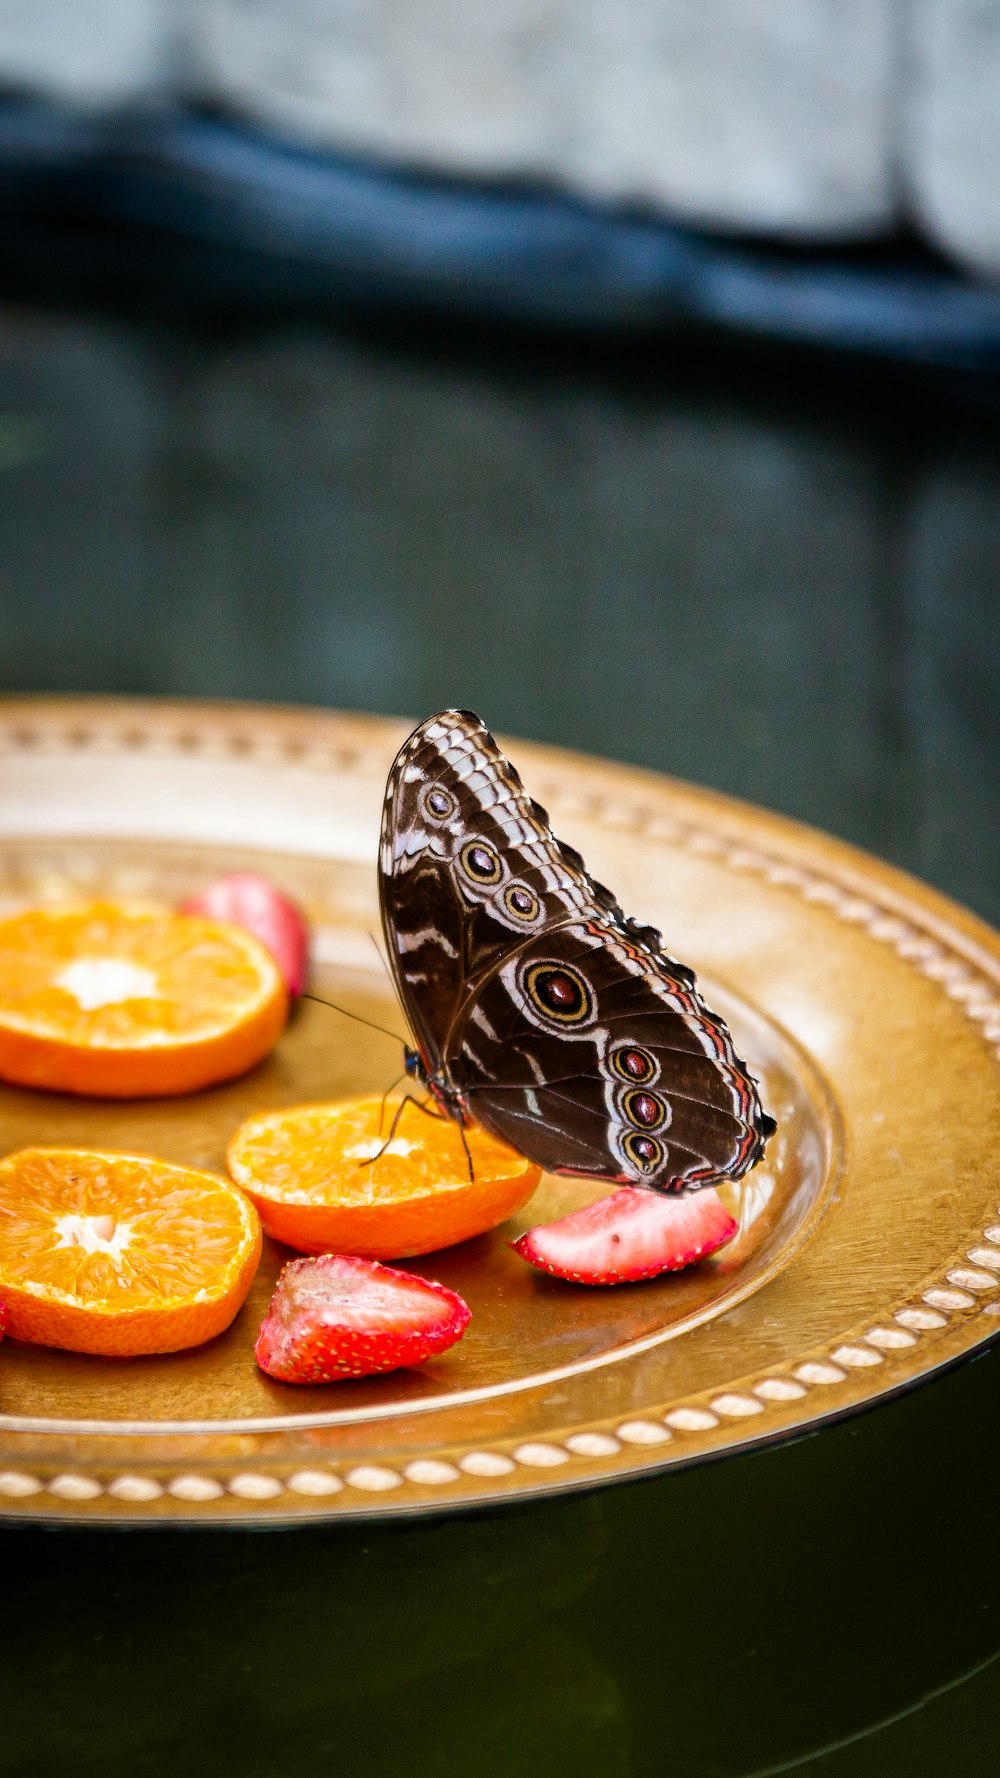 Una mariposa sentada encima de un plato de fruta